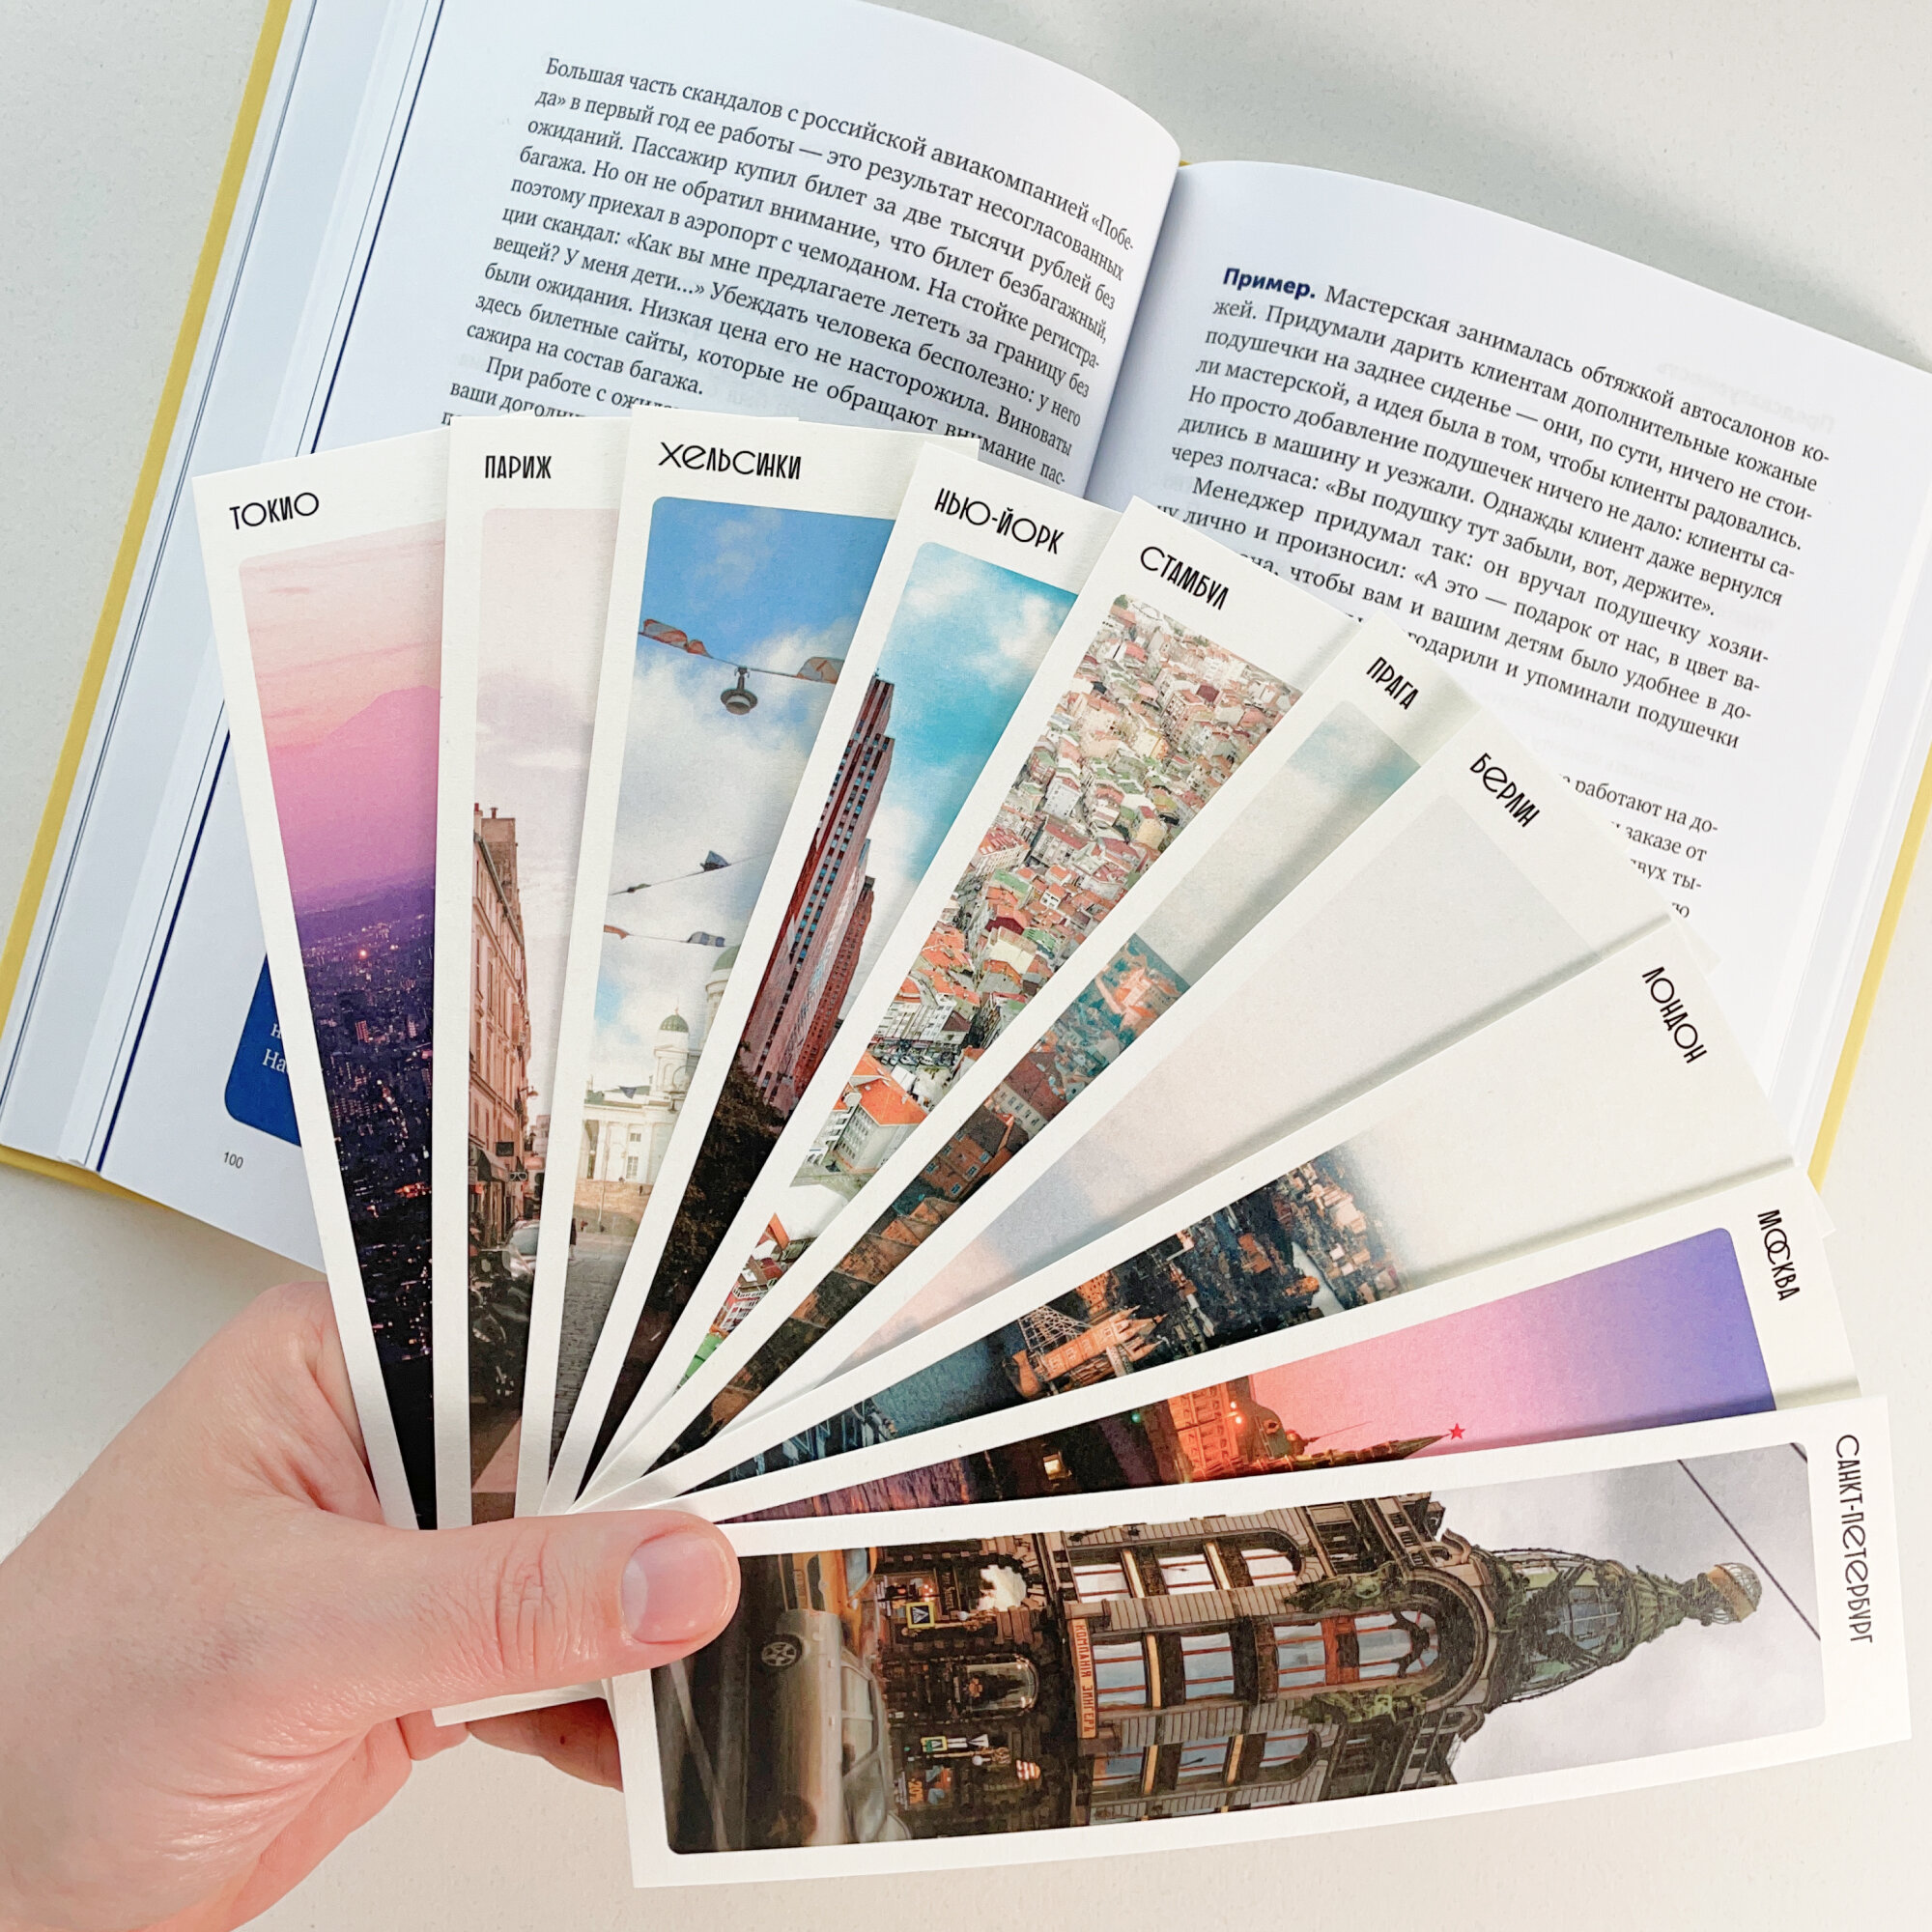 Книжные закладки бумажные. Фотографии городов